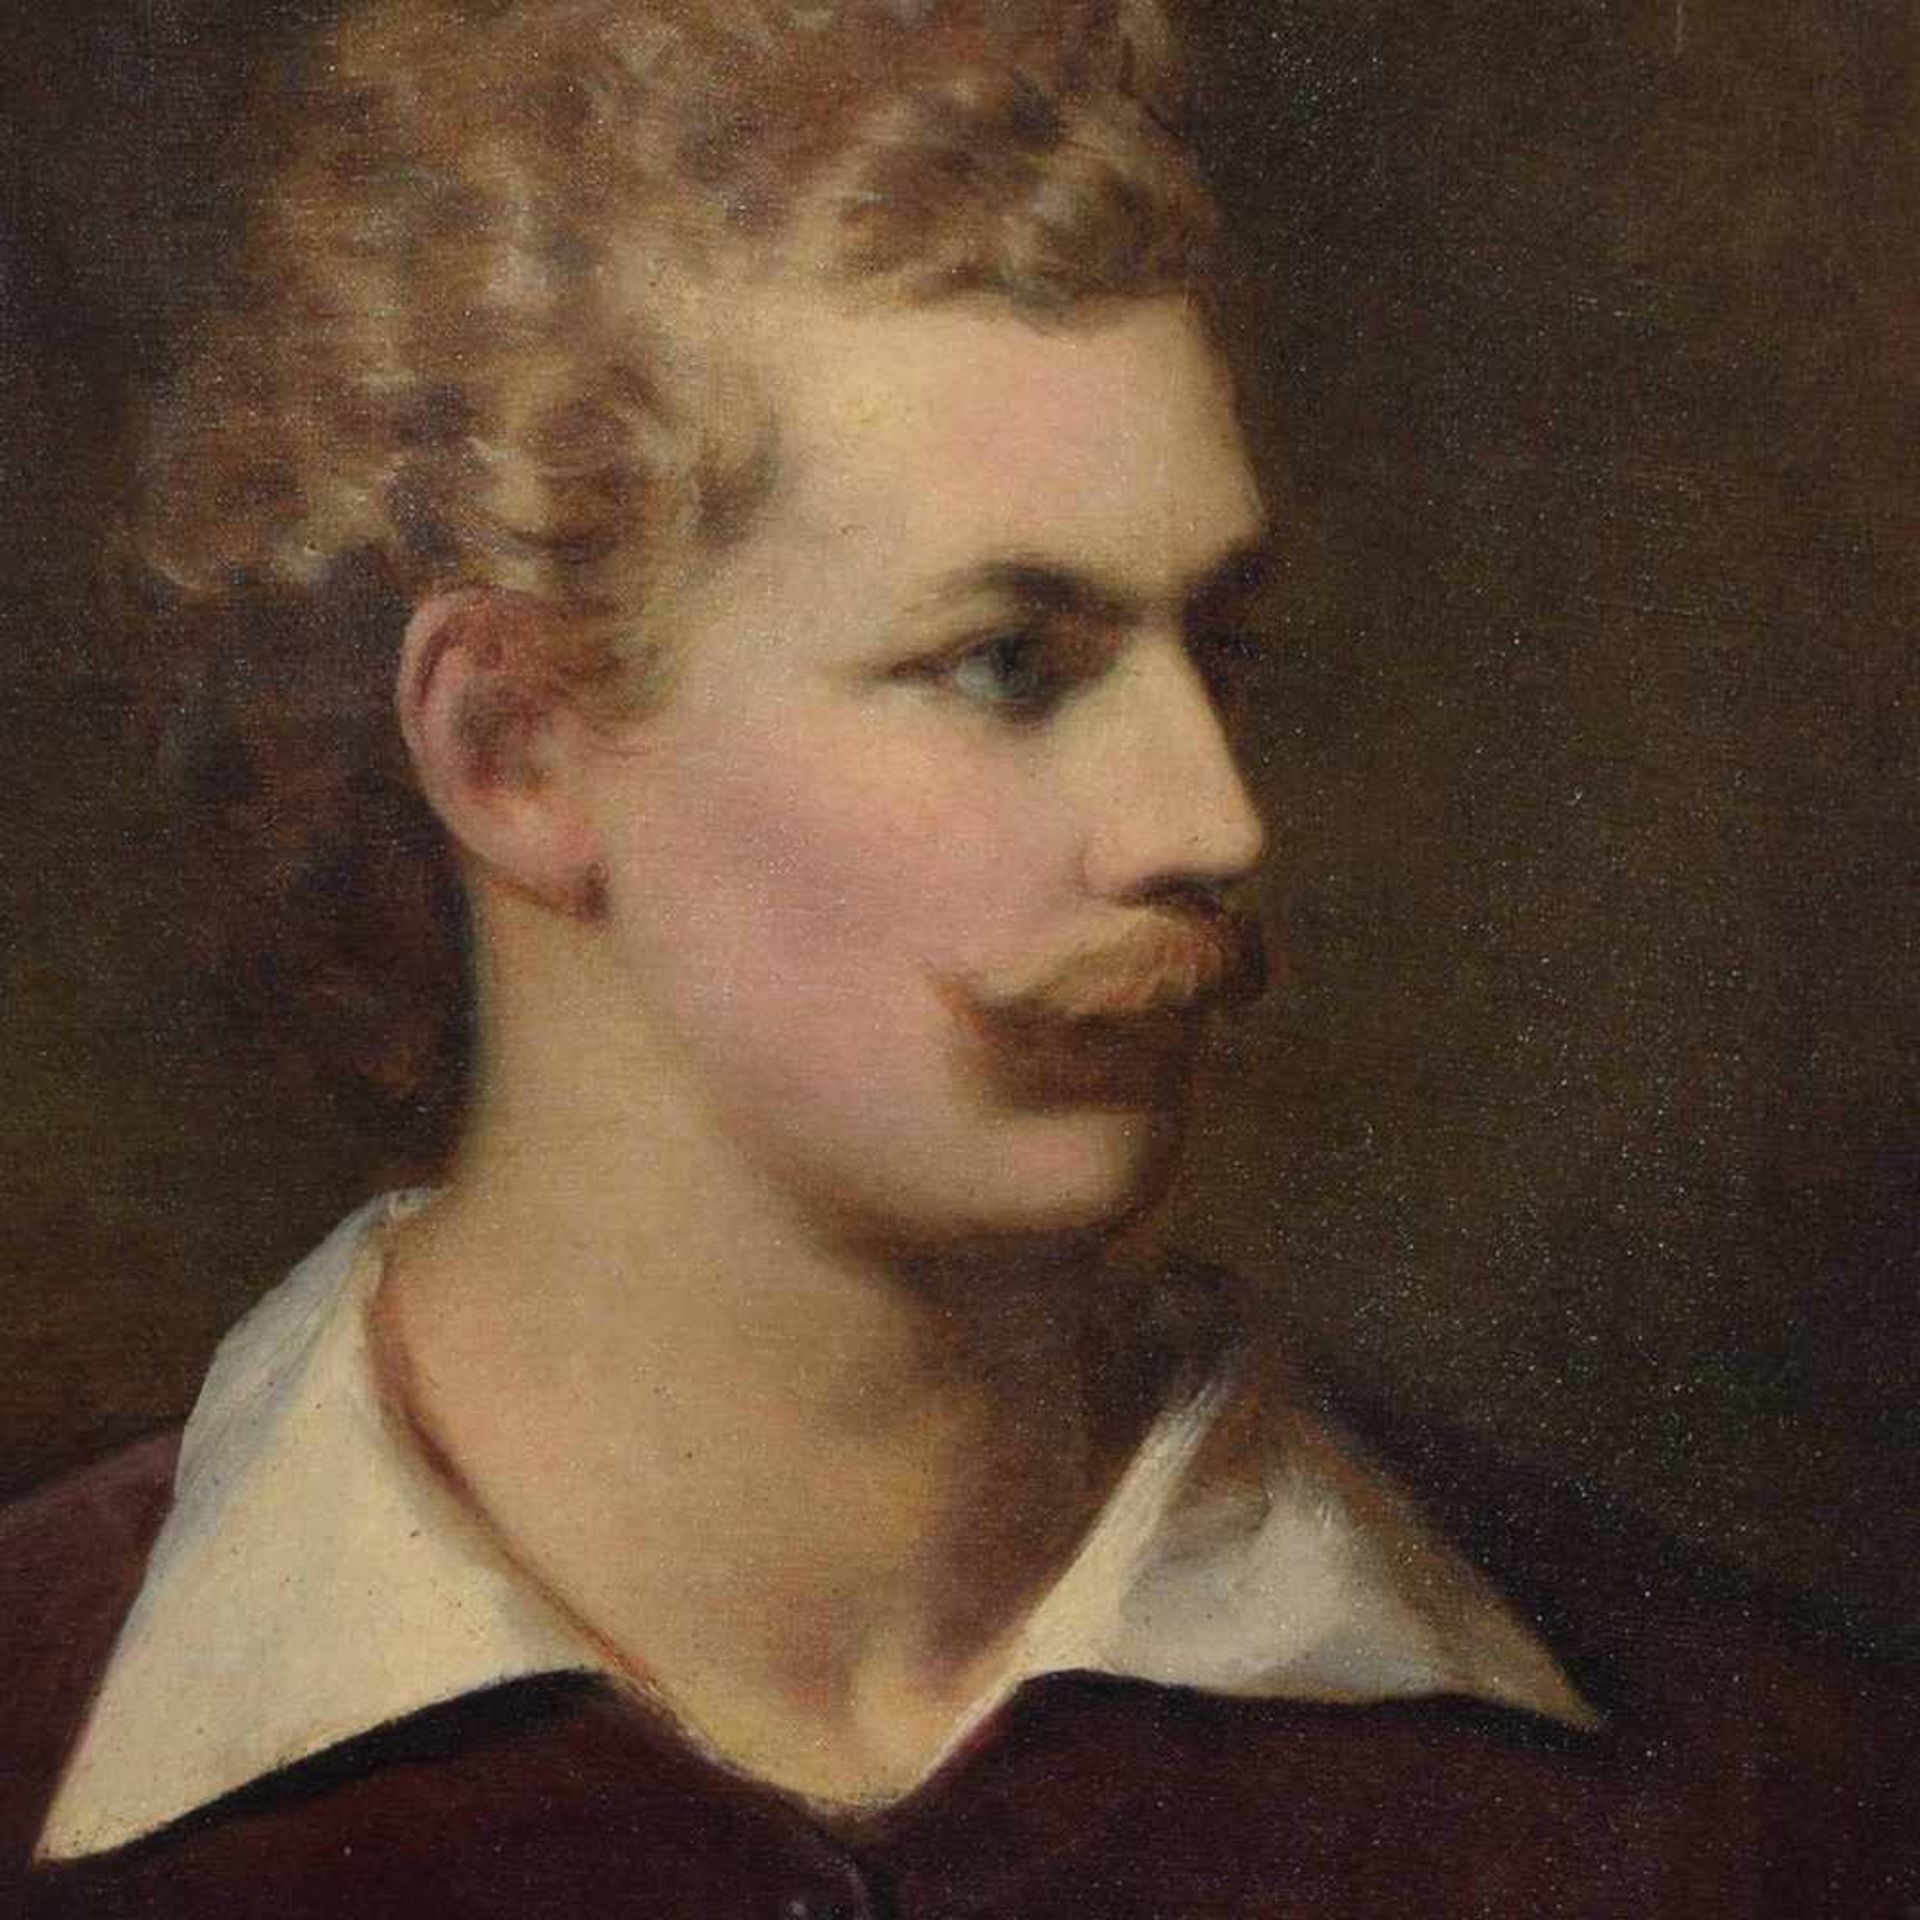 Unbekannter Porträtist Öl/Lwd., Brustporträt, wohl Darstellung des Malers Anselm Feuerbach nach